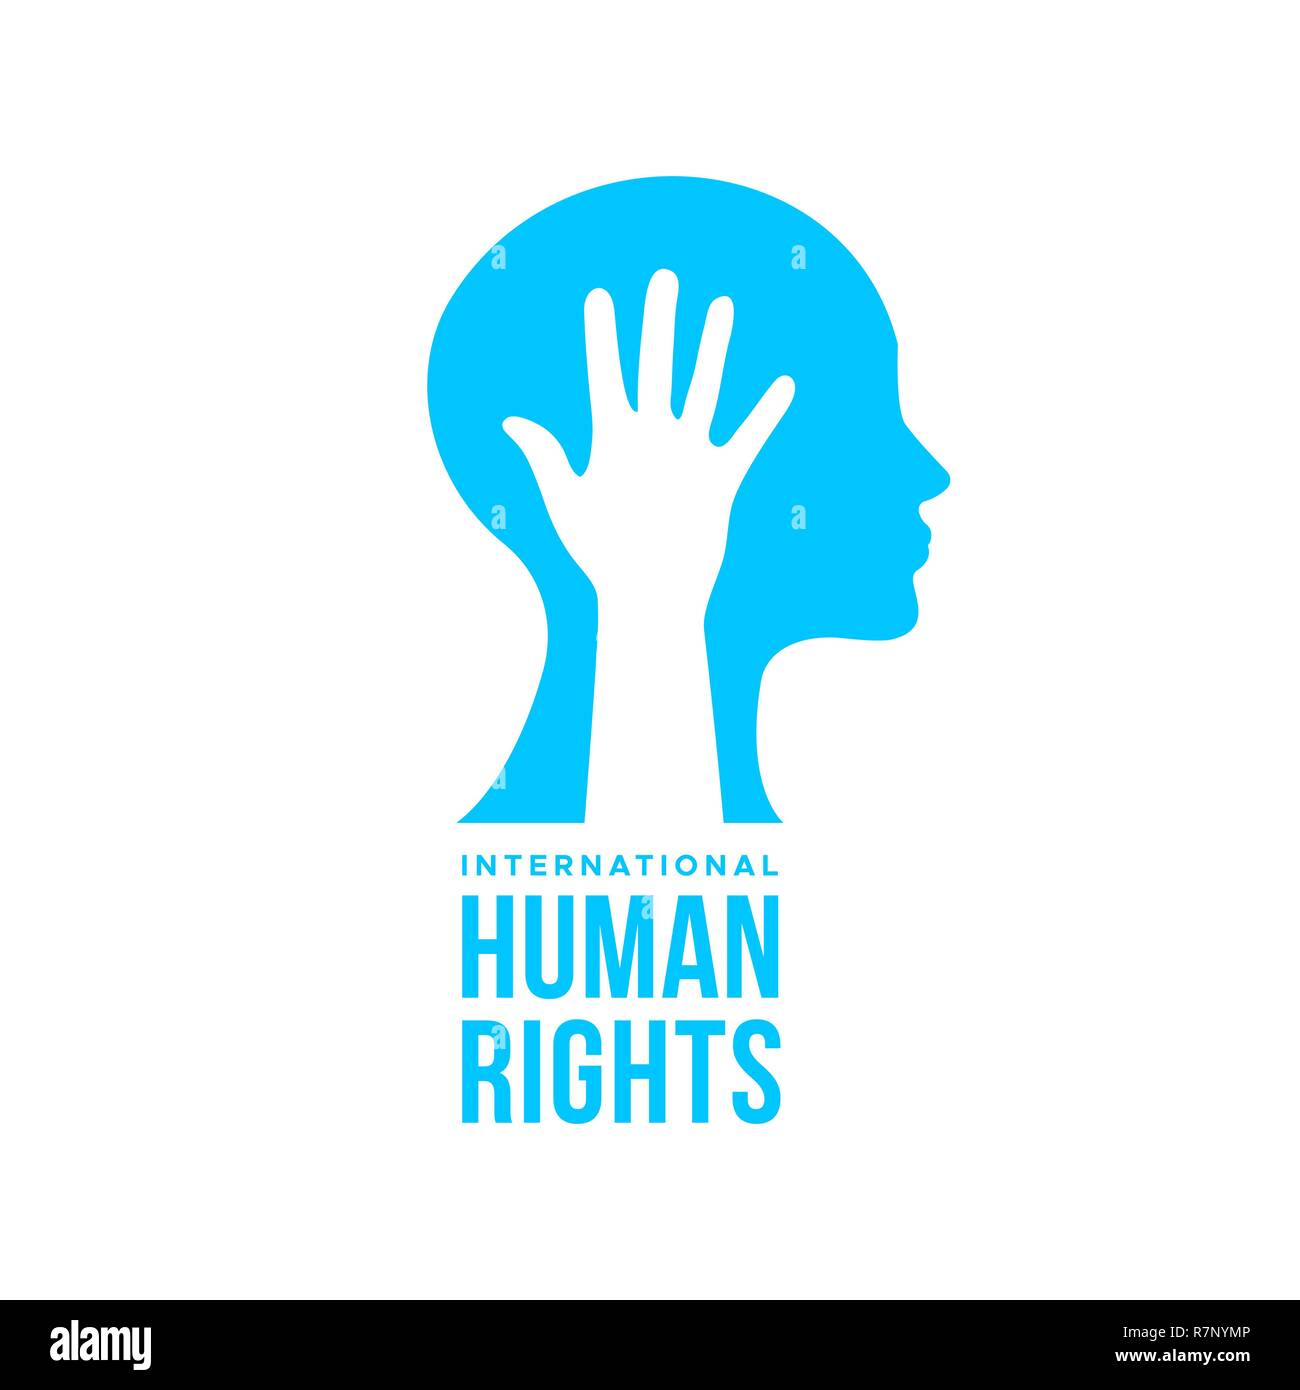 Die internationalen Menschenrechte Bewusstsein Konzeption Illustration für globale Gleichheit mit Hand und Kopf Profil. Respekt dem Menschen Freiheit. Stock Vektor